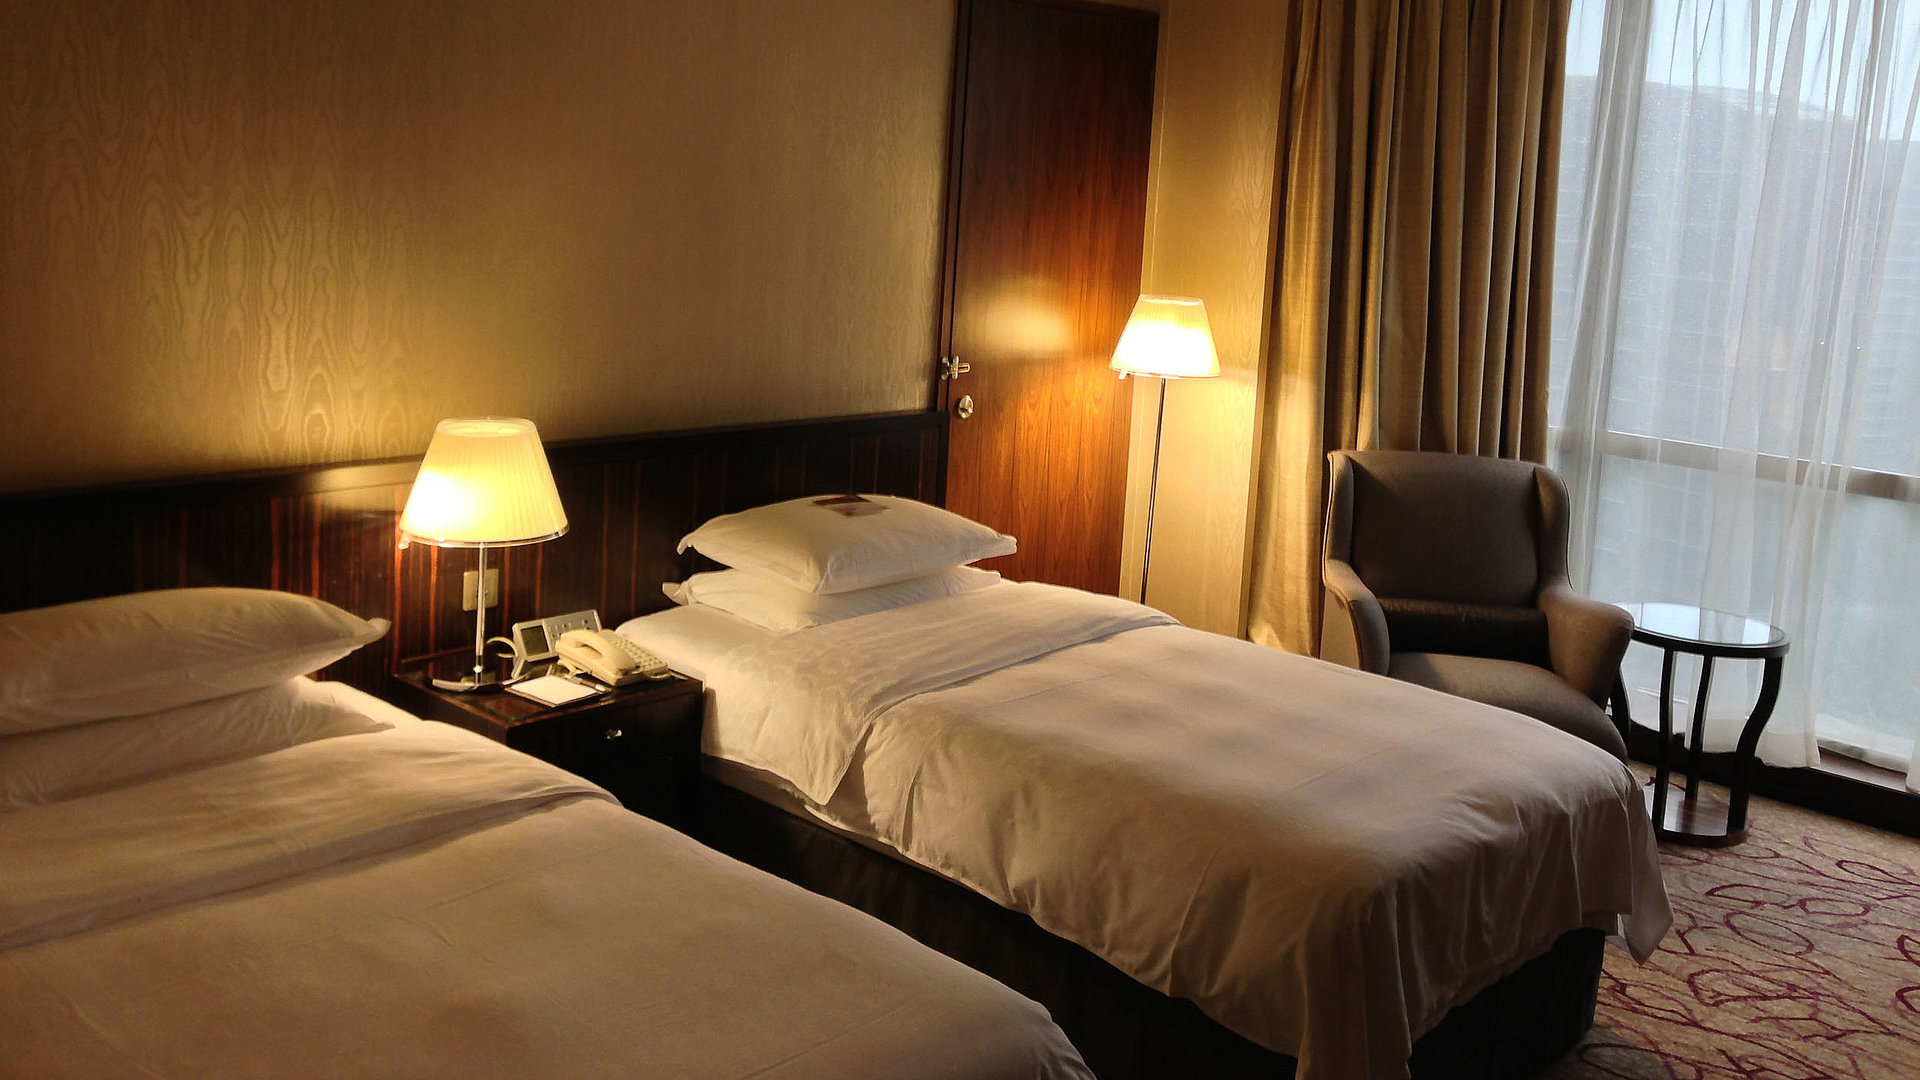 Übernachten im Video in Mittelfranken - sehr ordentliches Hotelzimmer mit zwei Betten, warmer Nachtlampe und Gardinen